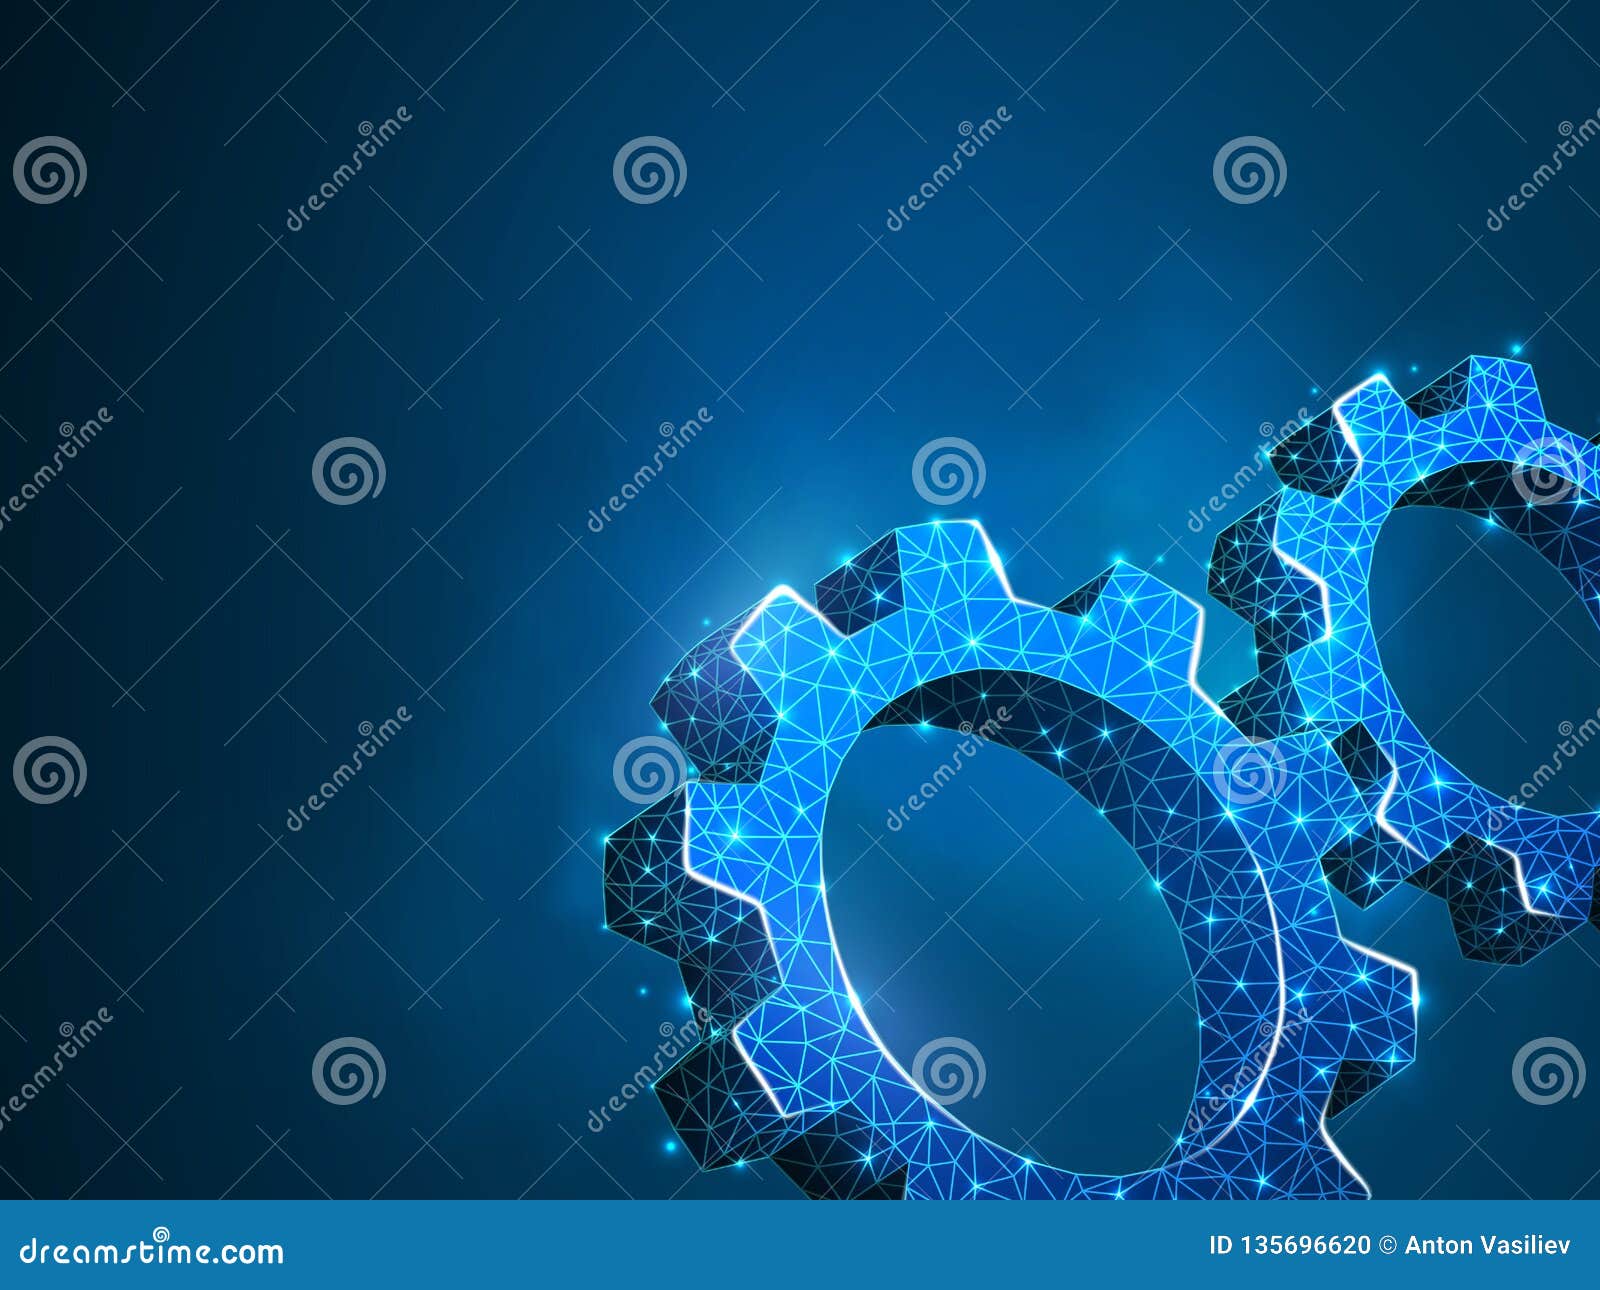 Kugghjul r E r. Kugghjul Branschutveckling, motorarbete, affärslösningsbegrepp Mekaniskt symbol för teknologimaskinteknik Utrustar låg poly polygonal wireframe två 3d för vektorn illustrationen på blå bakgrund